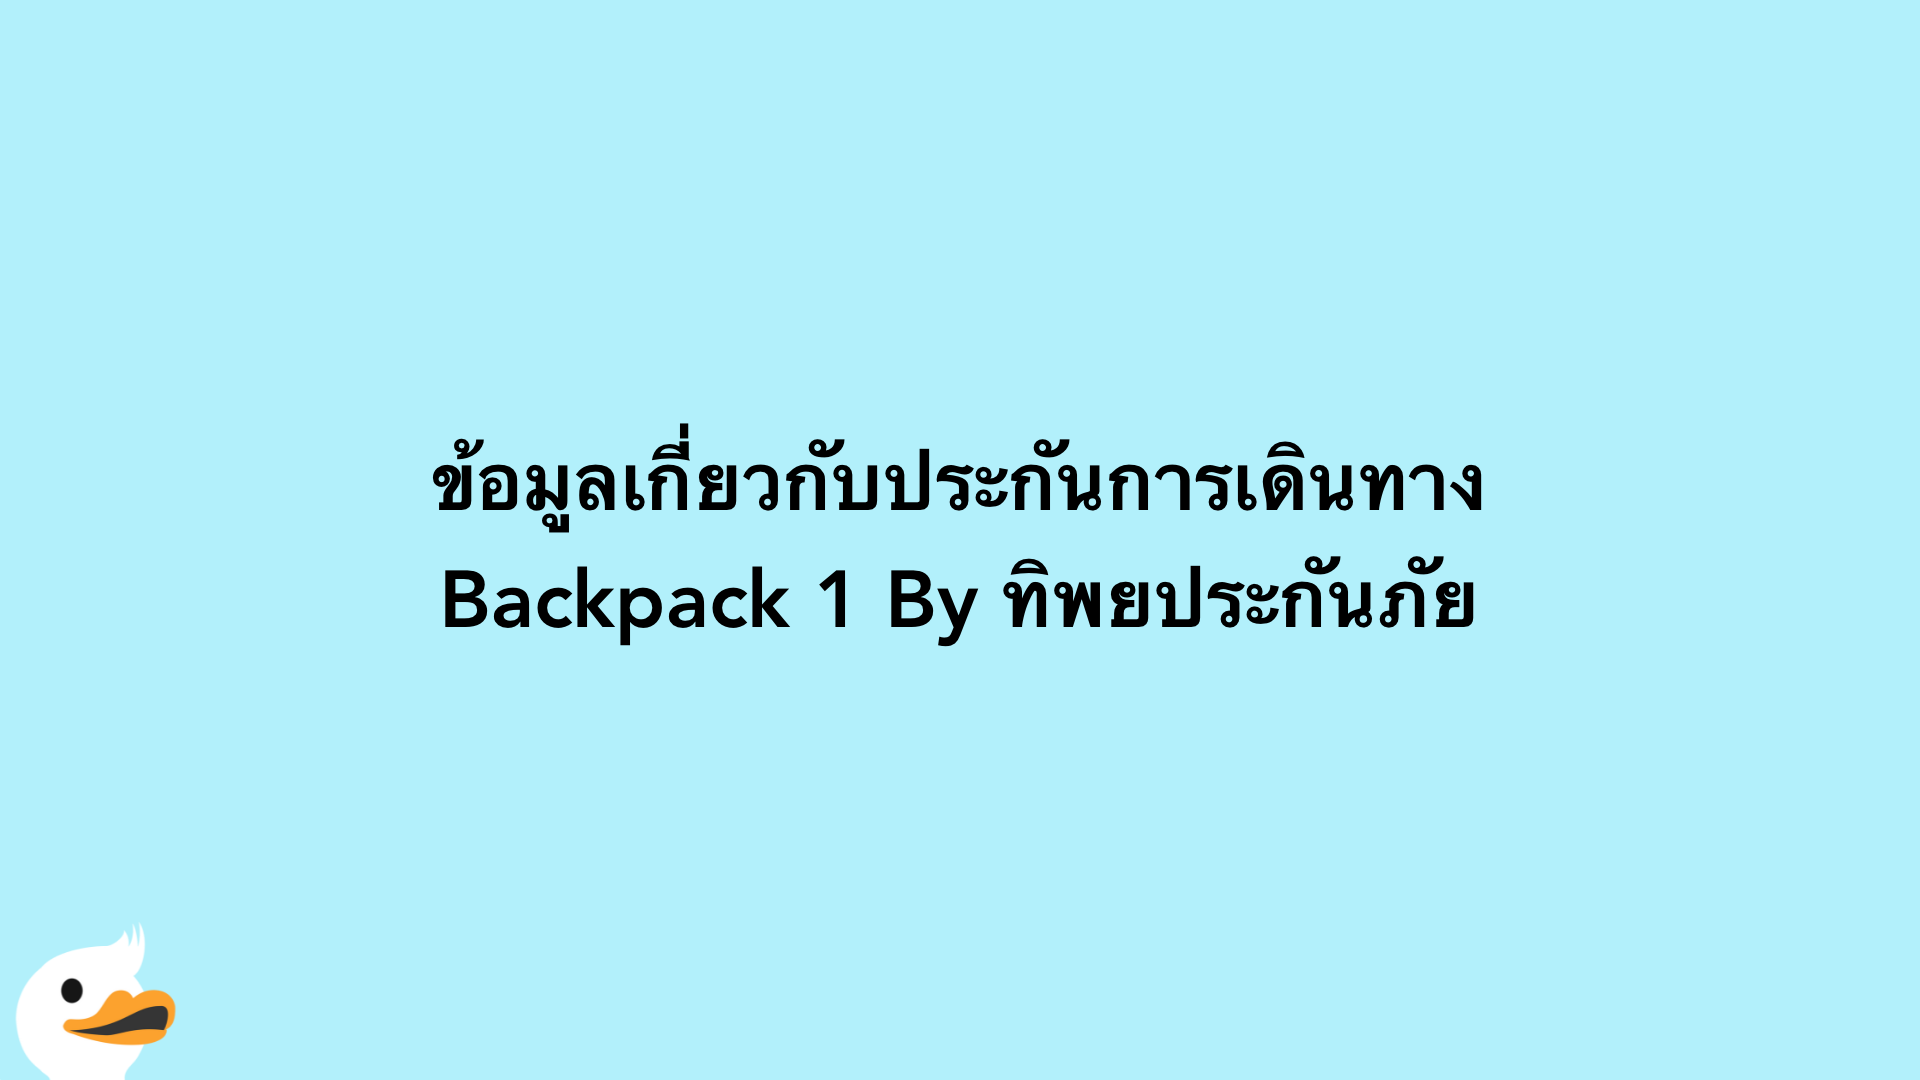 ข้อมูลเกี่ยวกับประกันการเดินทาง Backpack 1 By ทิพยประกันภัย